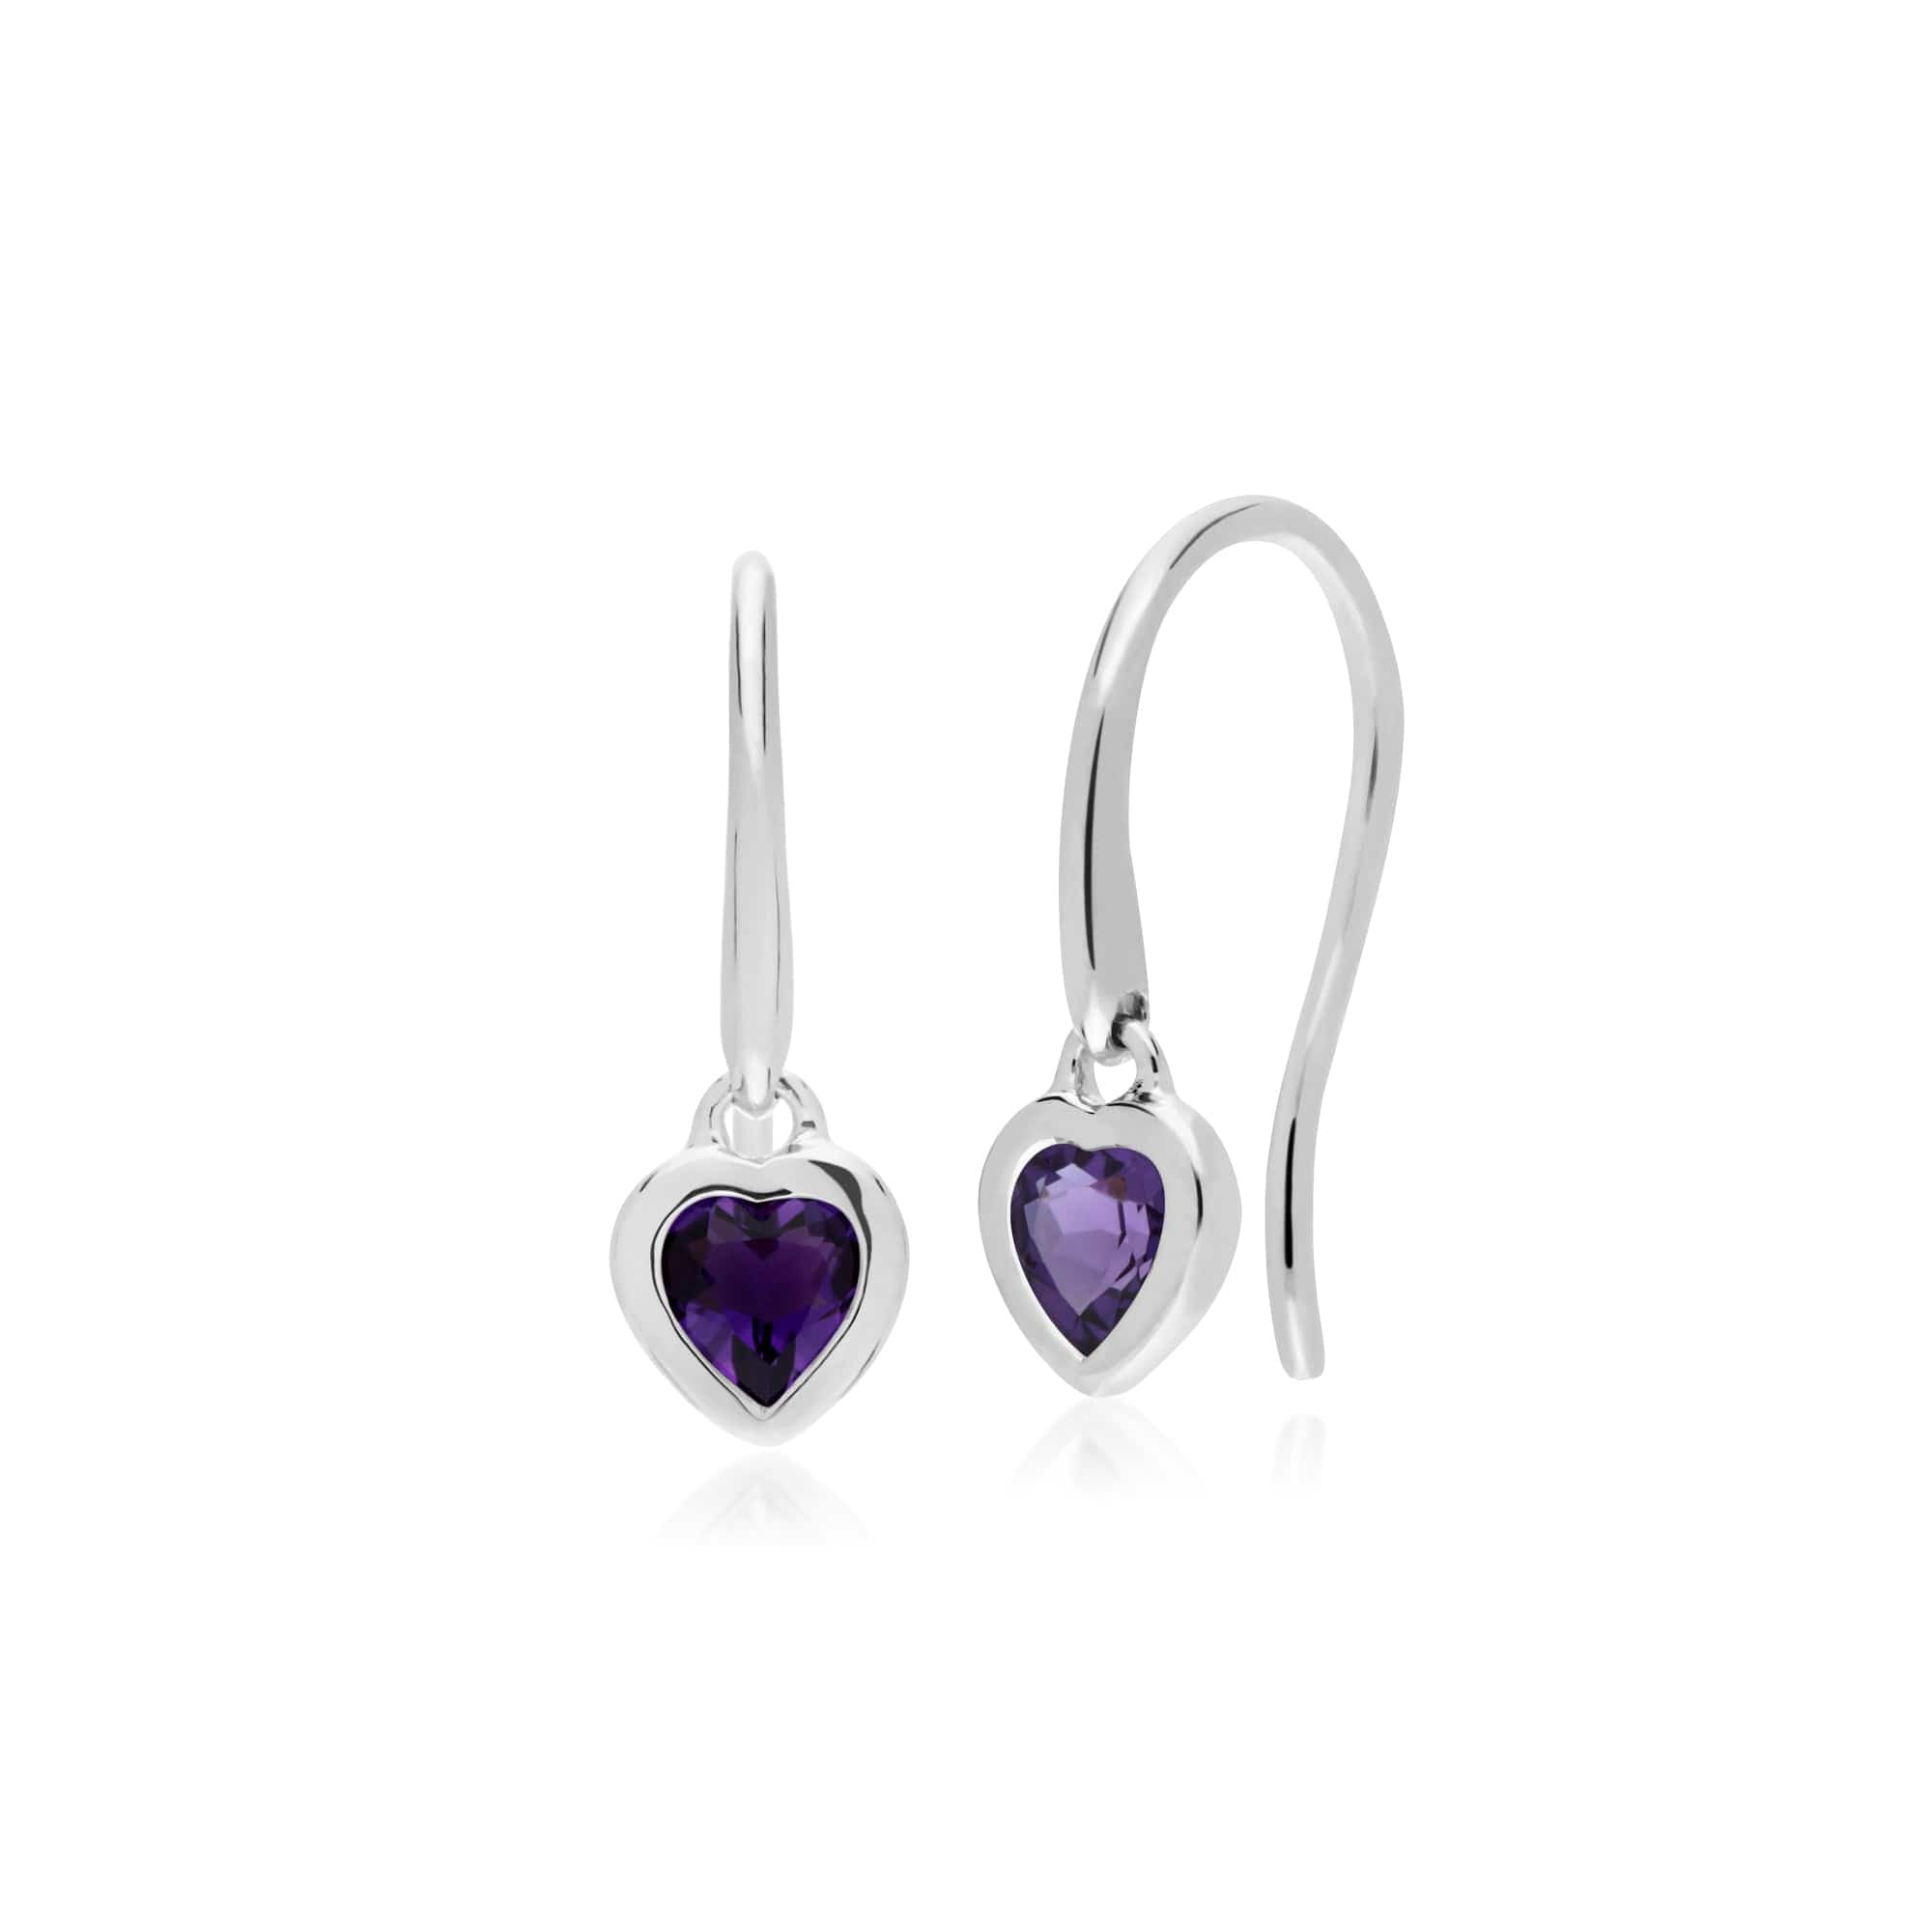 Essential Heart Shaped Amethyst Drop Earrings in 925 Sterling Silver - Gemondo